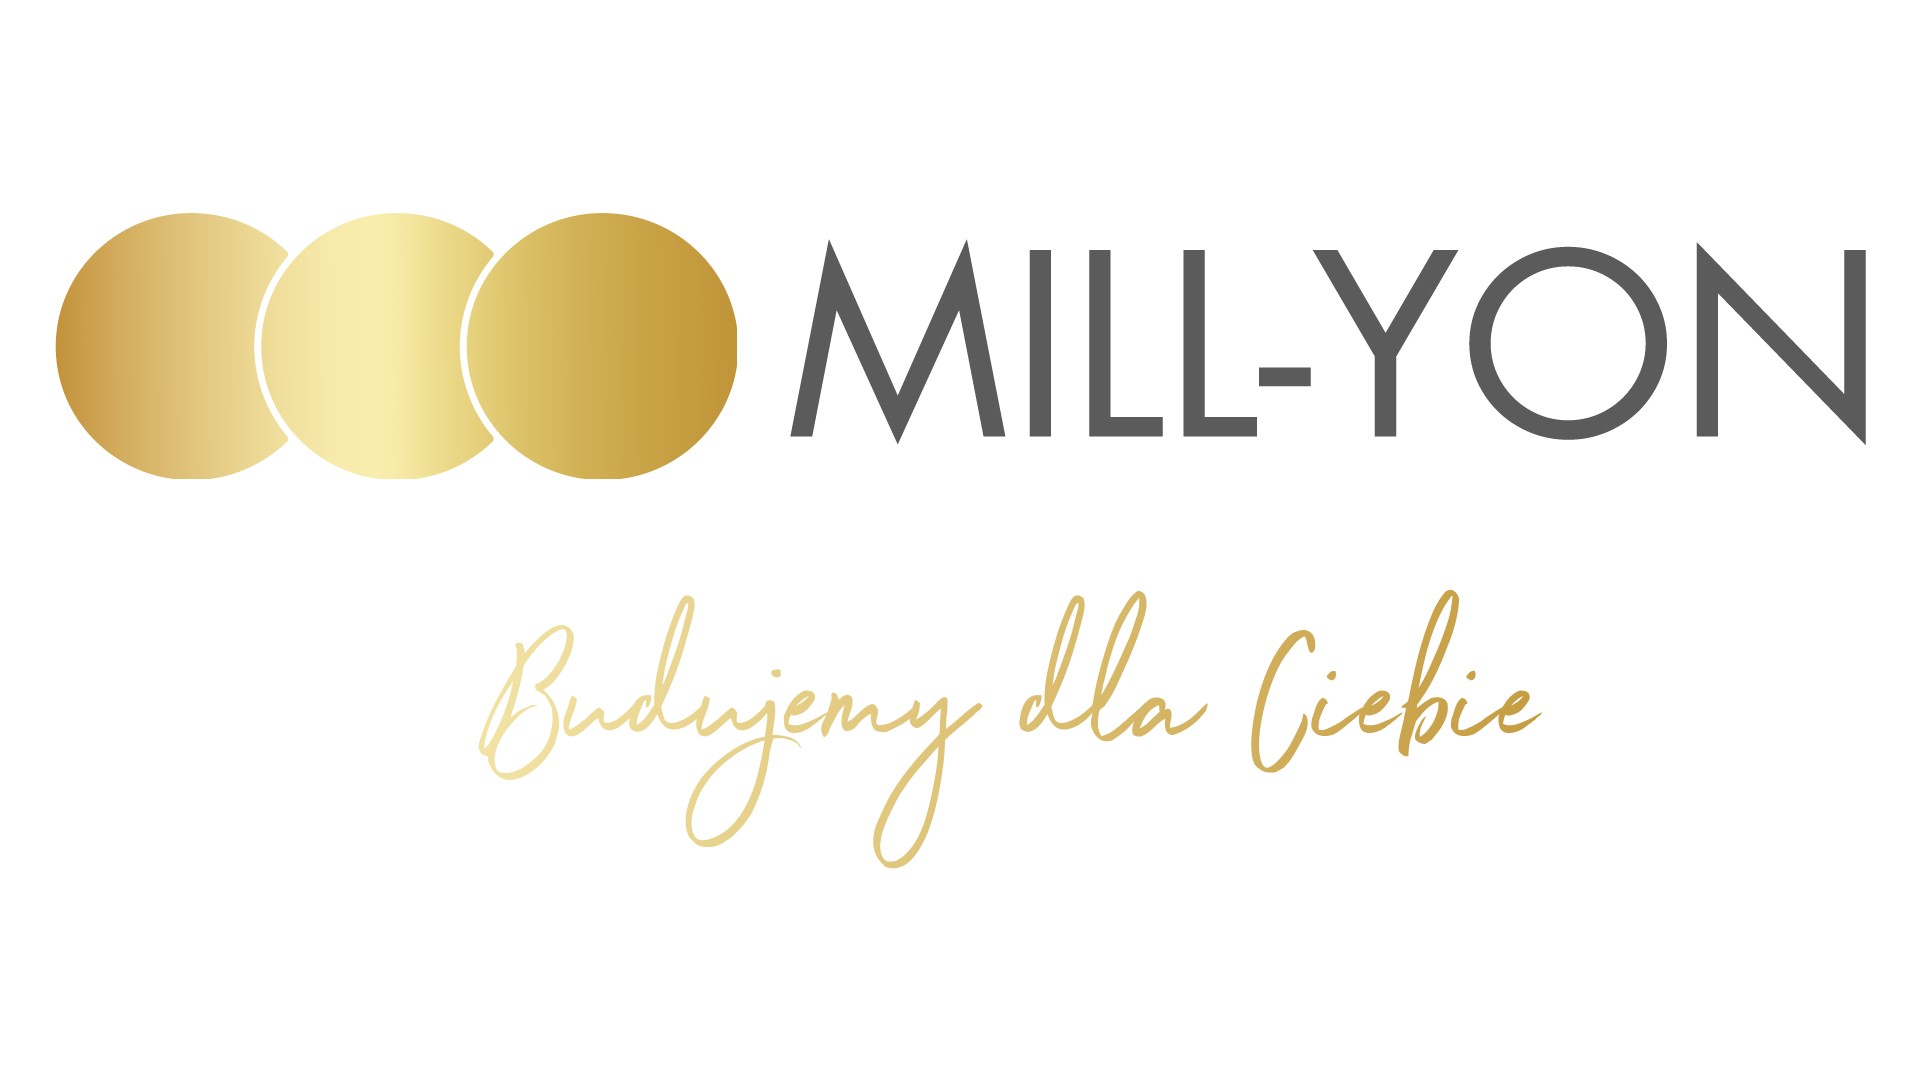 Mill-Yon Sp. z o.o. logo